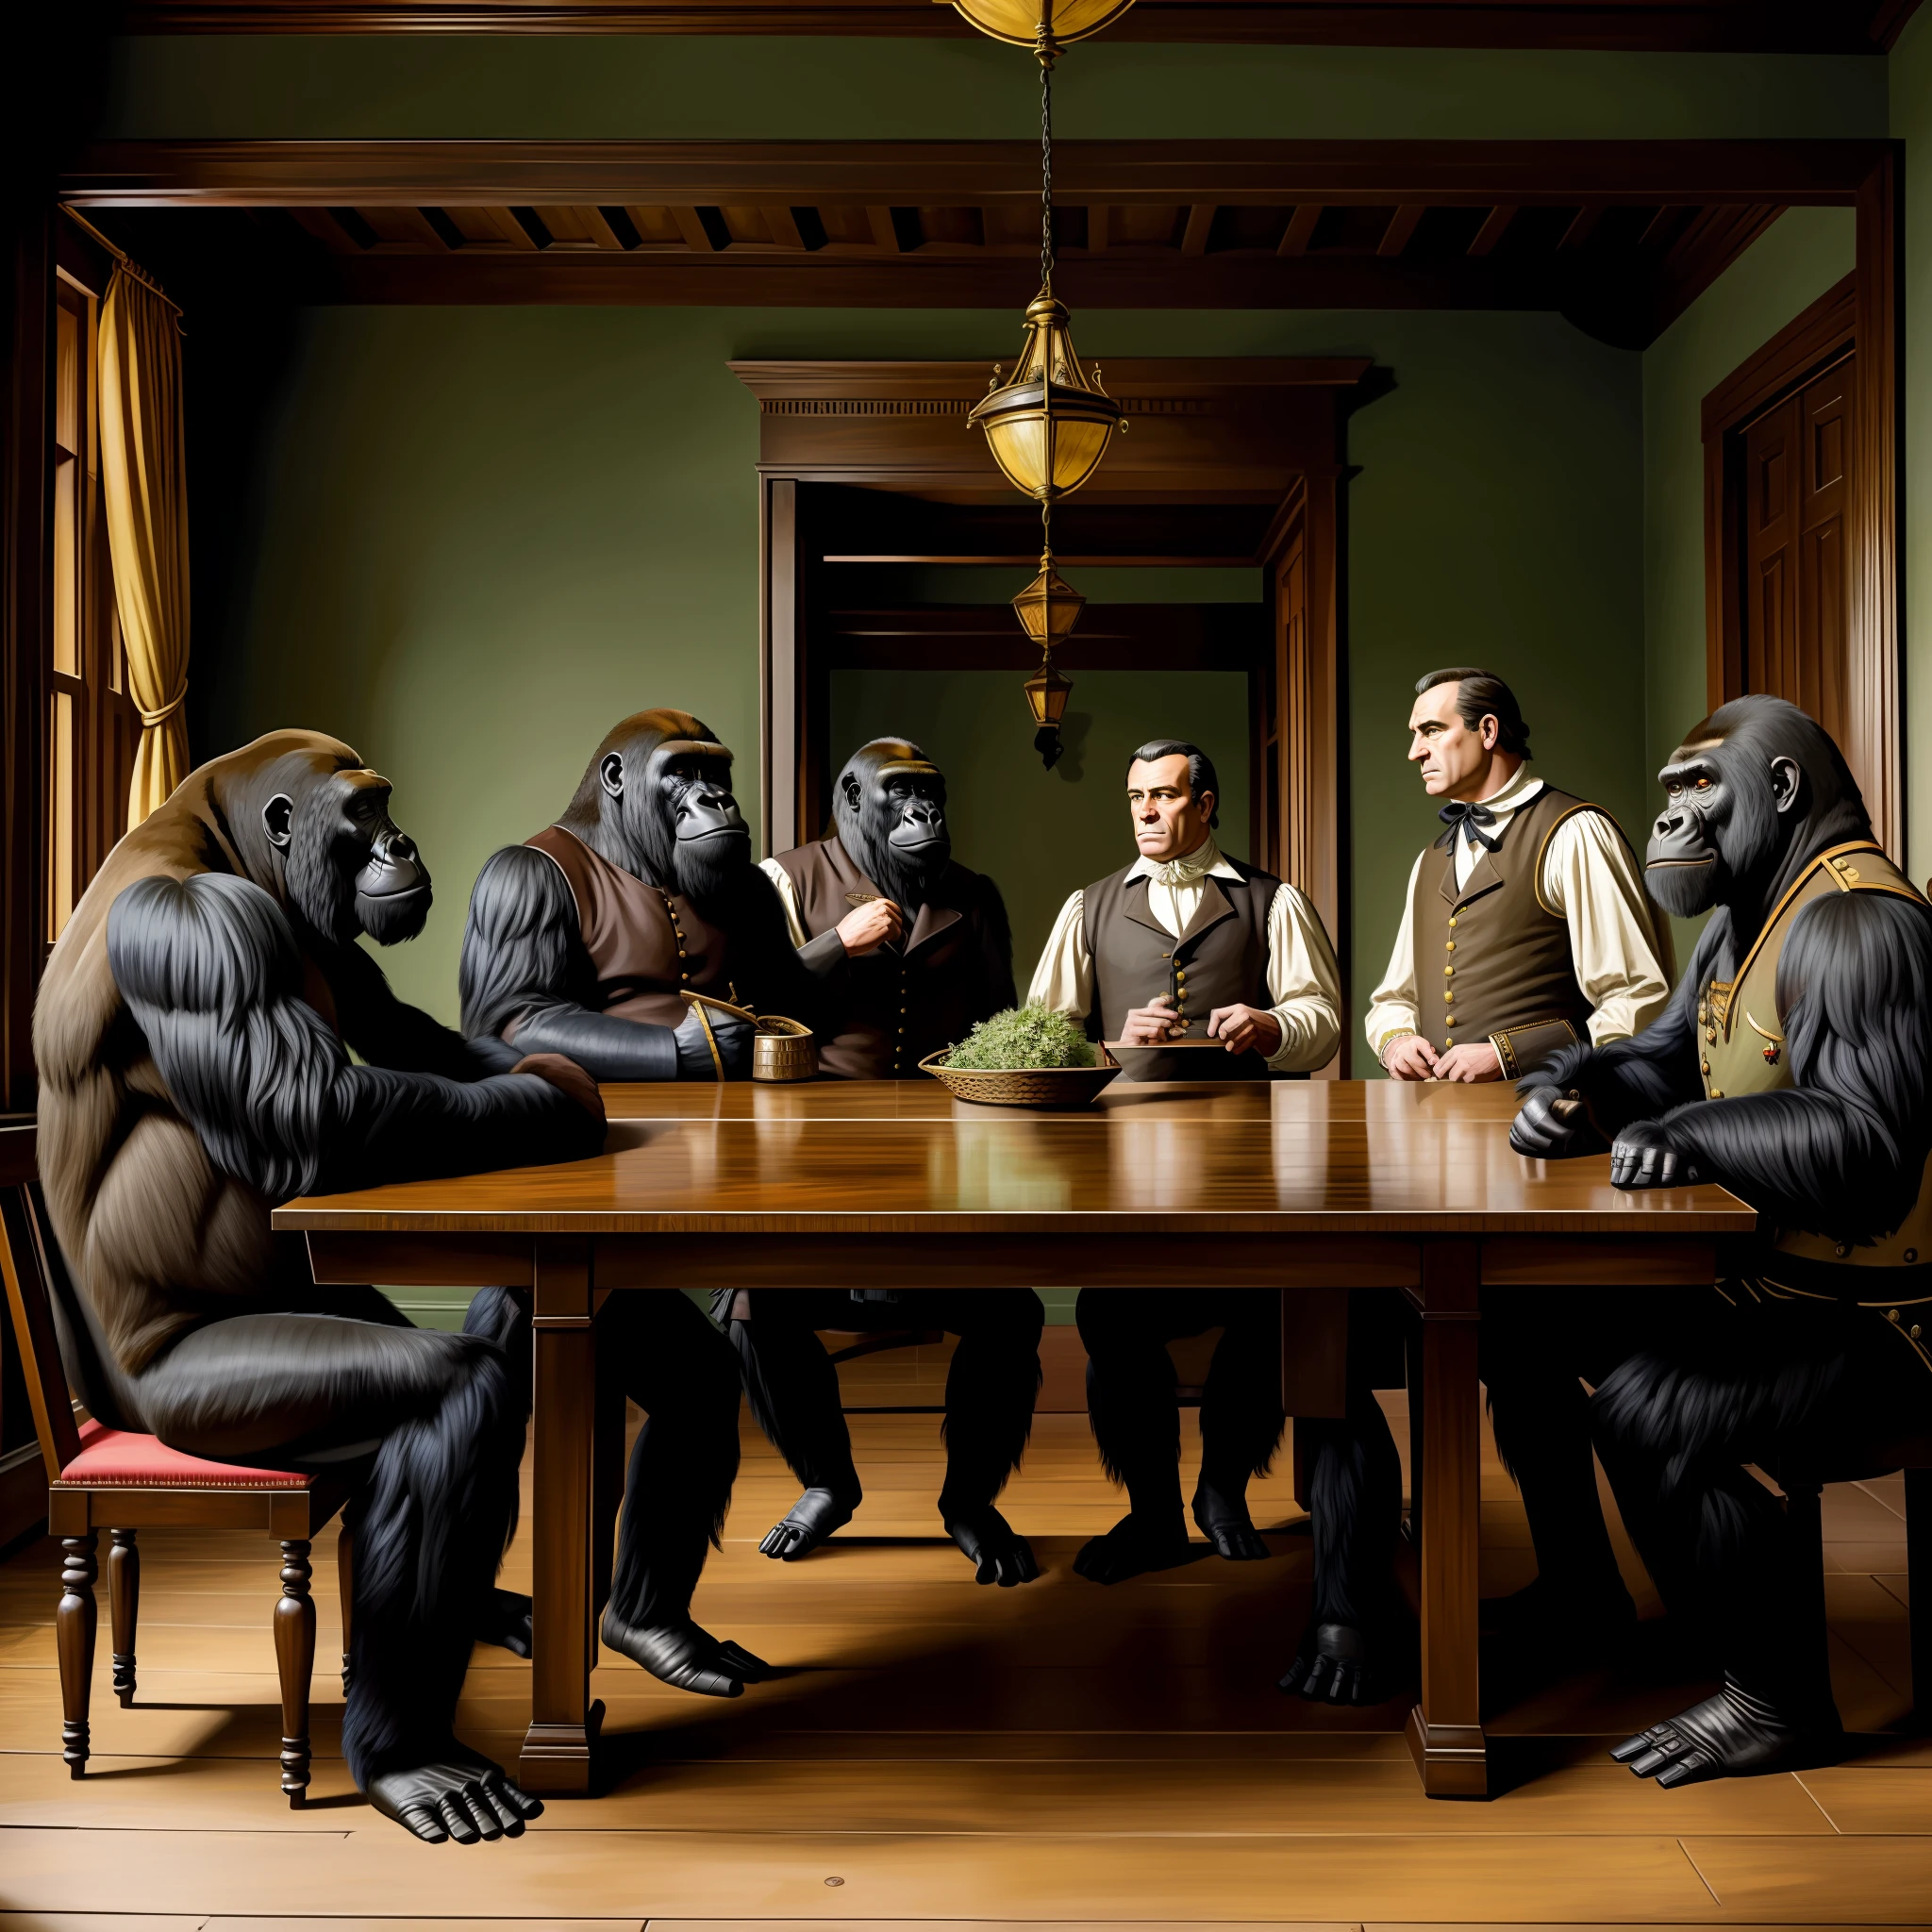 историческая живопись, панорамный снимок, В коридоре, гориллы спорят, гориллы спорят, горилы в колониальных нарядах, беседа, стиль колониальной эпохи, детальная одежда, серьезные лица, диалог, Переговоры , В таблице, Переговоры table, гориллы в колониальных костюмах, гориллы в военной технике